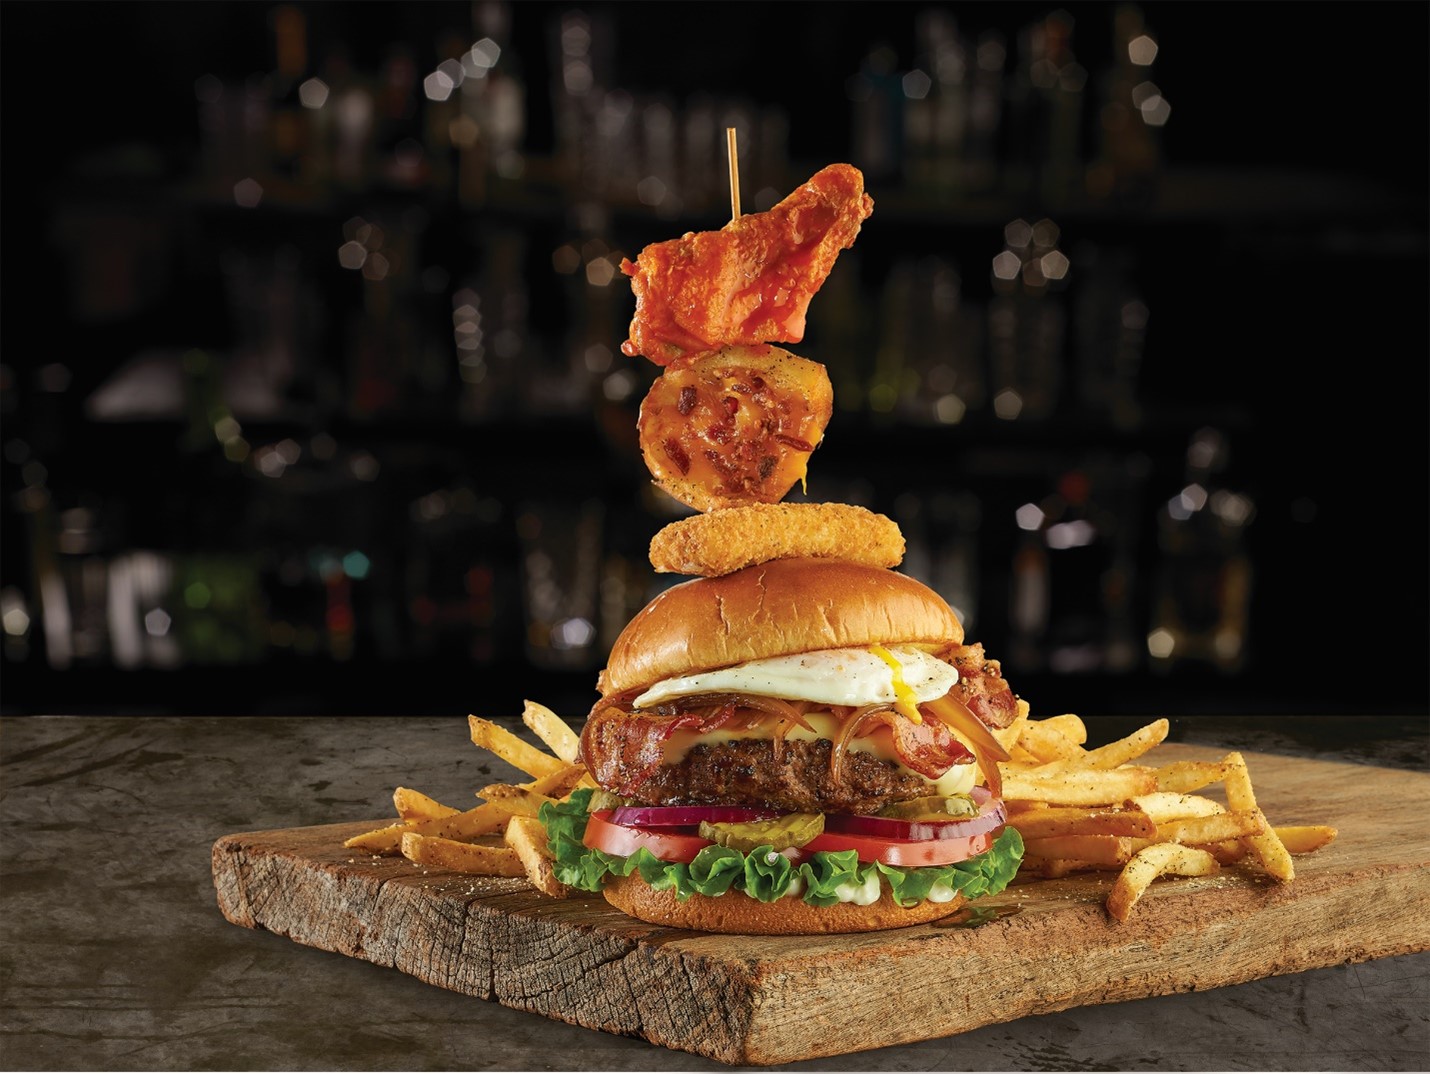 Festival Mega Burger Fridays chega com 5 receitas exclusivas para desafiar até os mais famintos amantes de hambúrguer